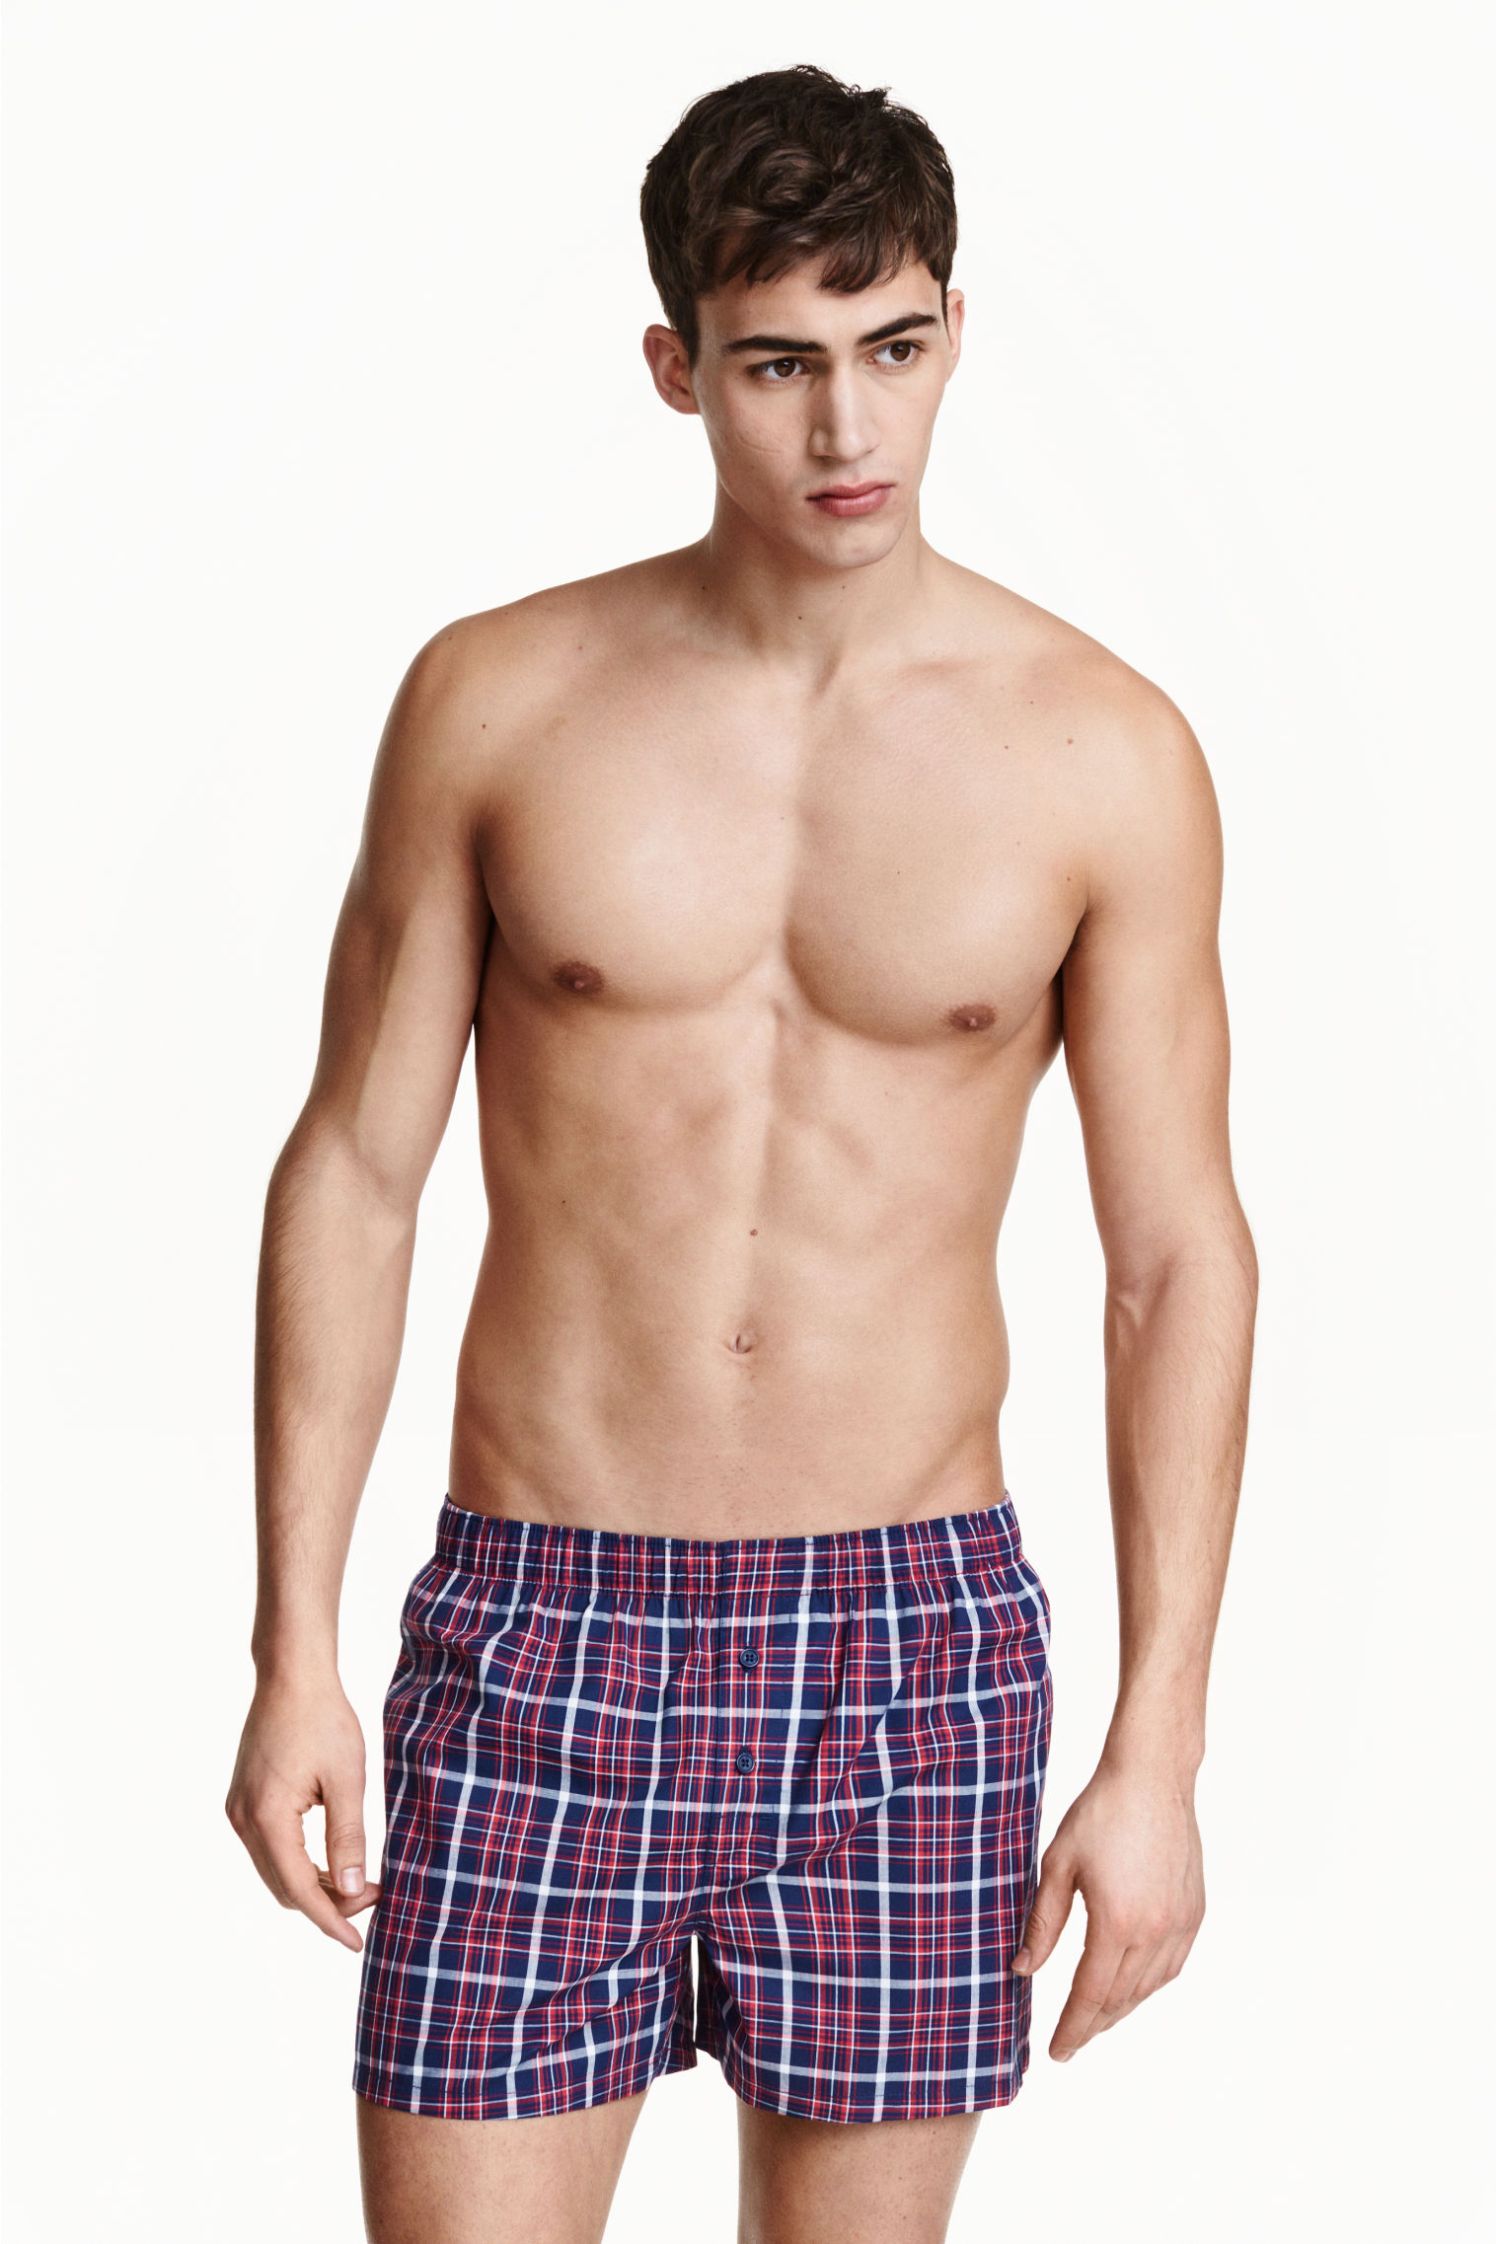 H&M Underwear - Spring/Summer 2015